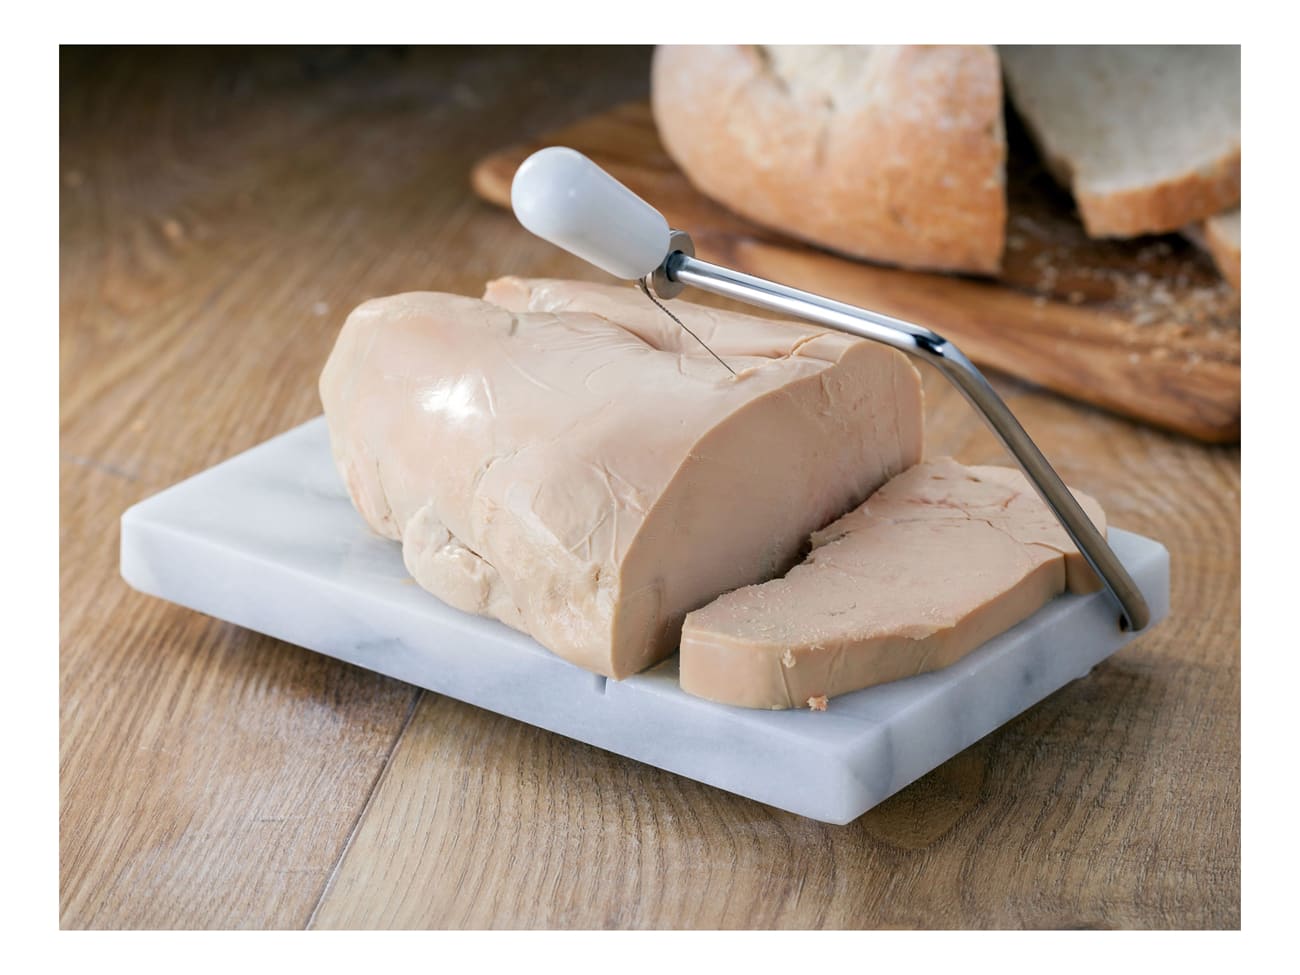 Fils de rechange 17 cm pour lyre à foie gras